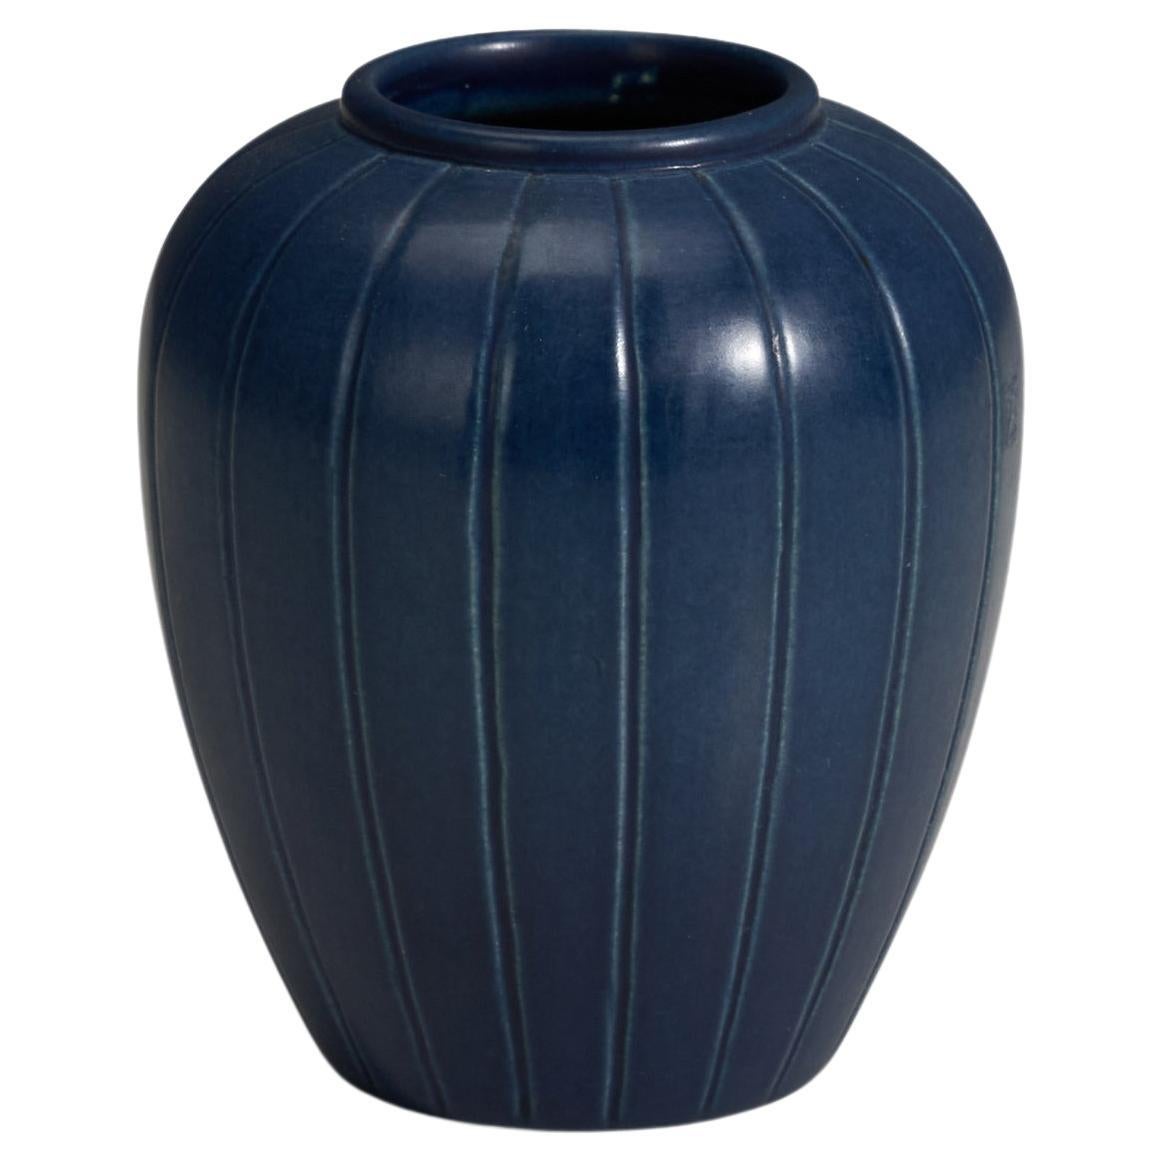 Peter Ipsen Enke, Vase, Blue Glazed Stoneware, Denmark, 1940s